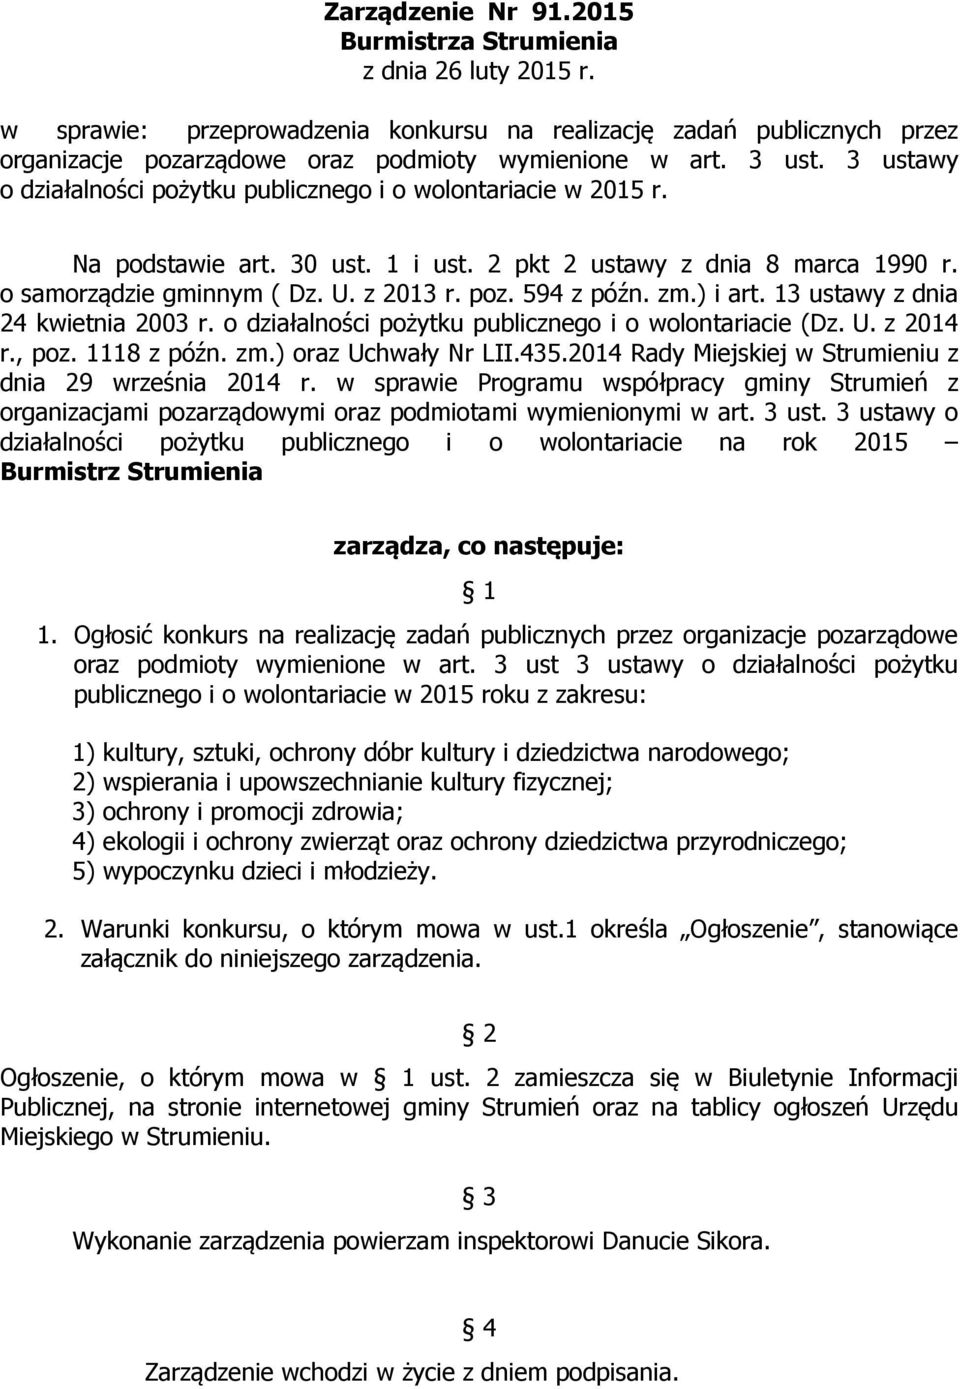 594 z późn. zm.) i art. 13 ustawy z dnia 24 kwietnia 2003 r. o działalności pożytku publicznego i o wolontariacie (Dz. U. z 2014 r., poz. 1118 z późn. zm.) oraz Uchwały Nr LII.435.